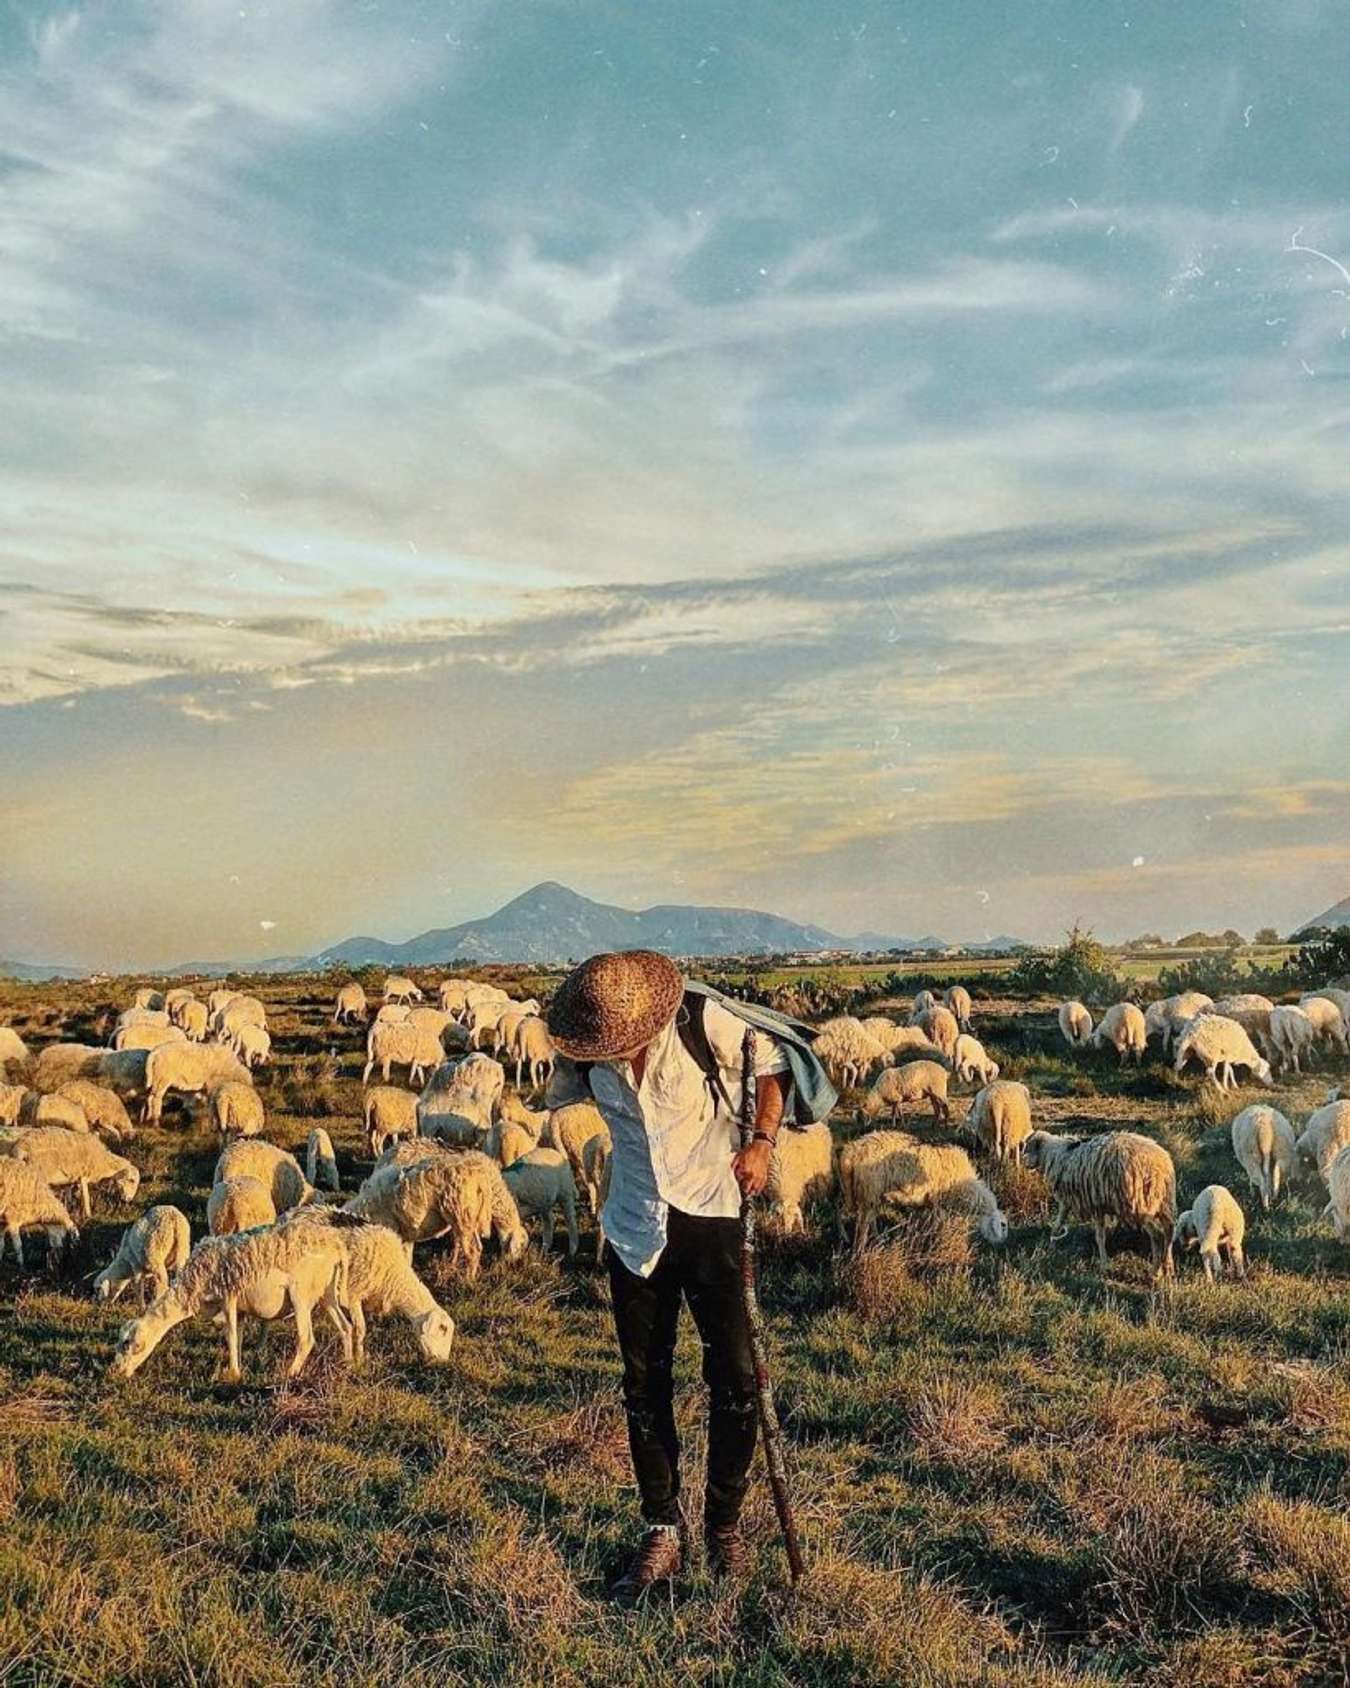 Góc chụp cực “nghệ” tại đồng cừu An Hòa